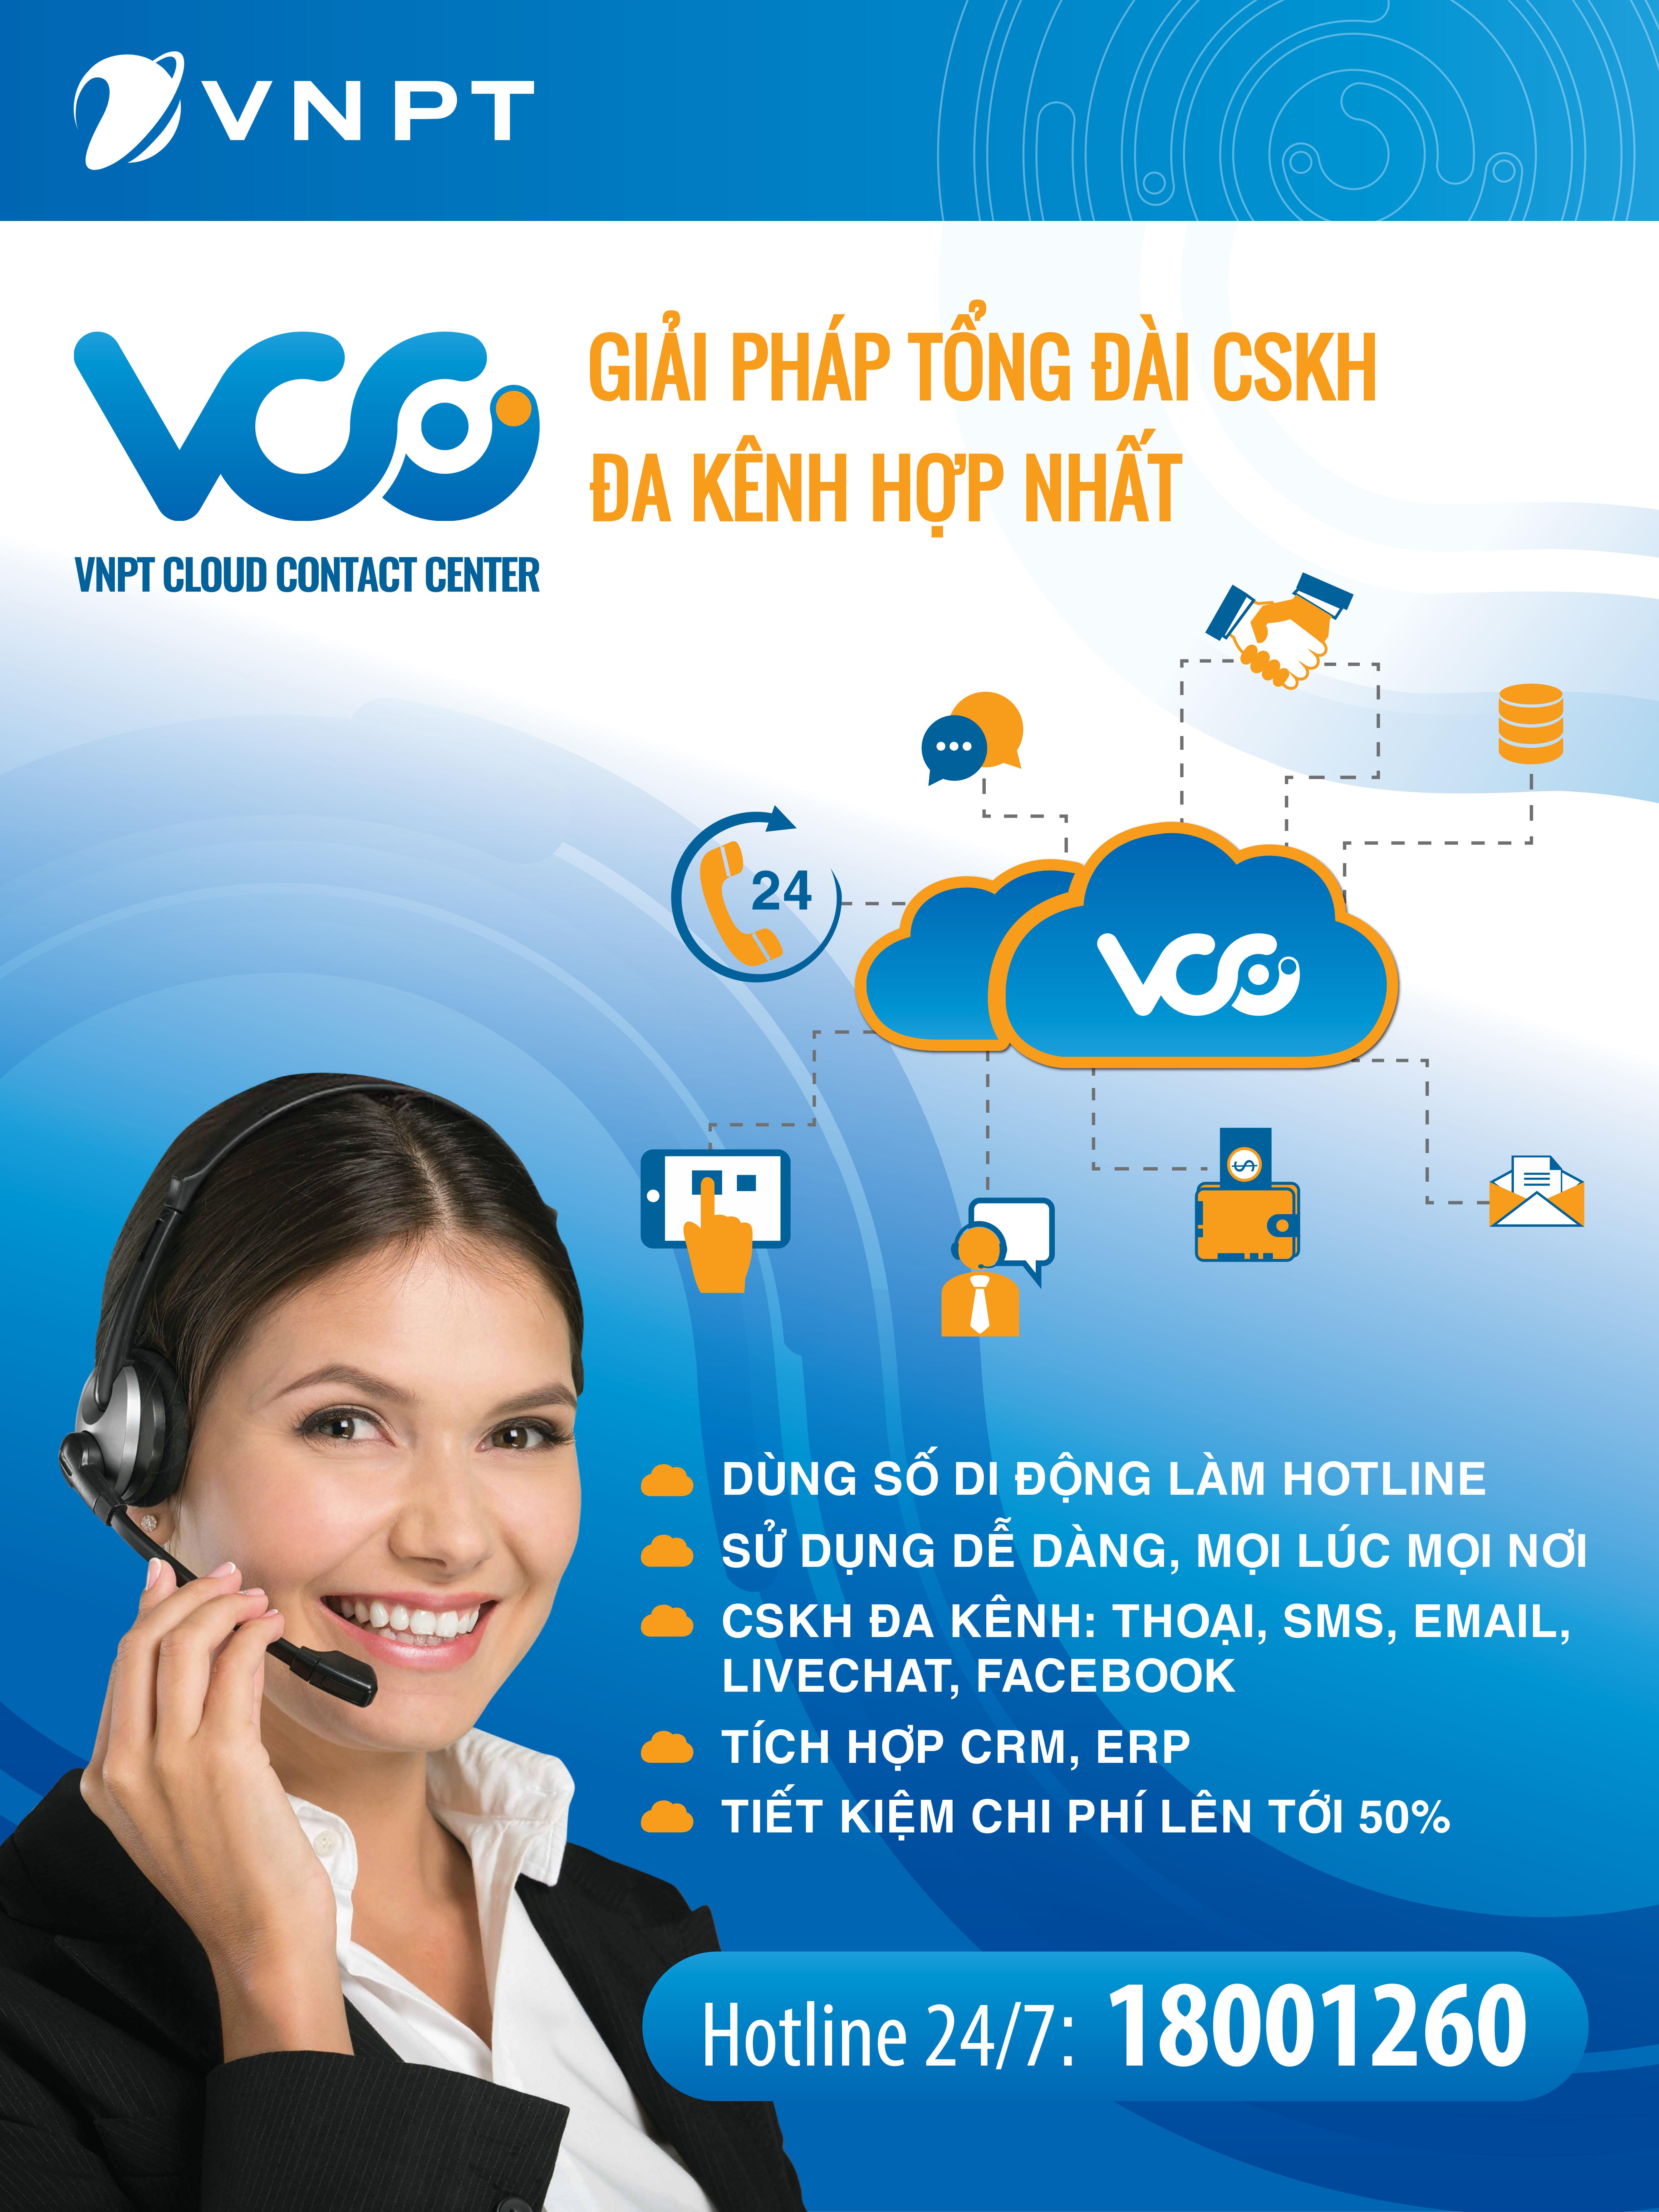 VNPT contact center - Quản trị liên hệ khách hàng toàn diện